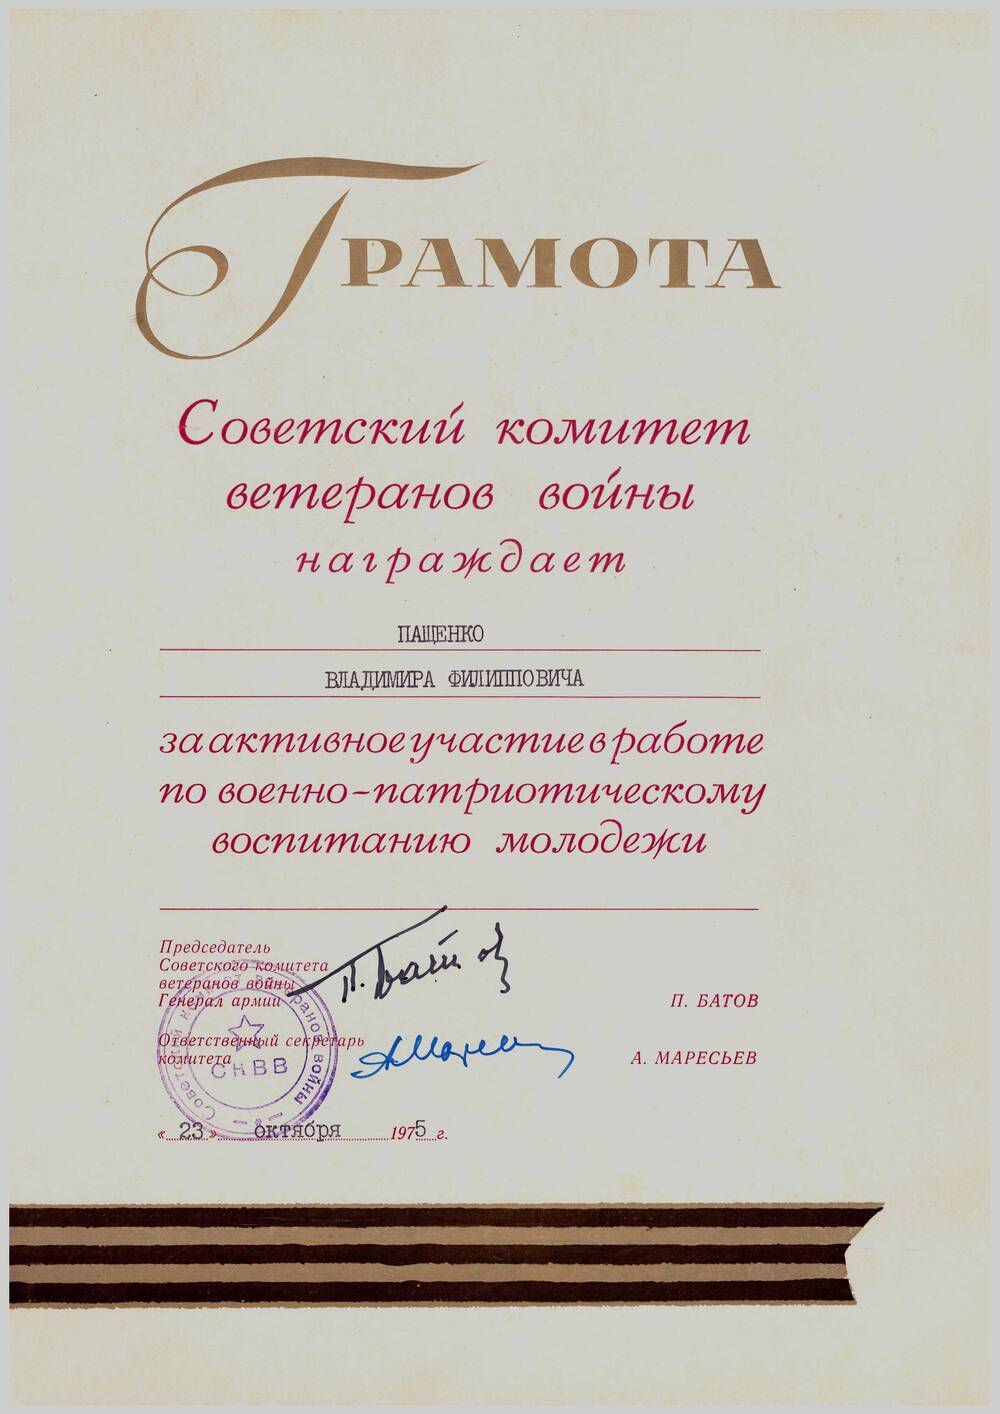 Почётная грамота Советского комитета ветеранов войны Пащенко Владимира Филипповича